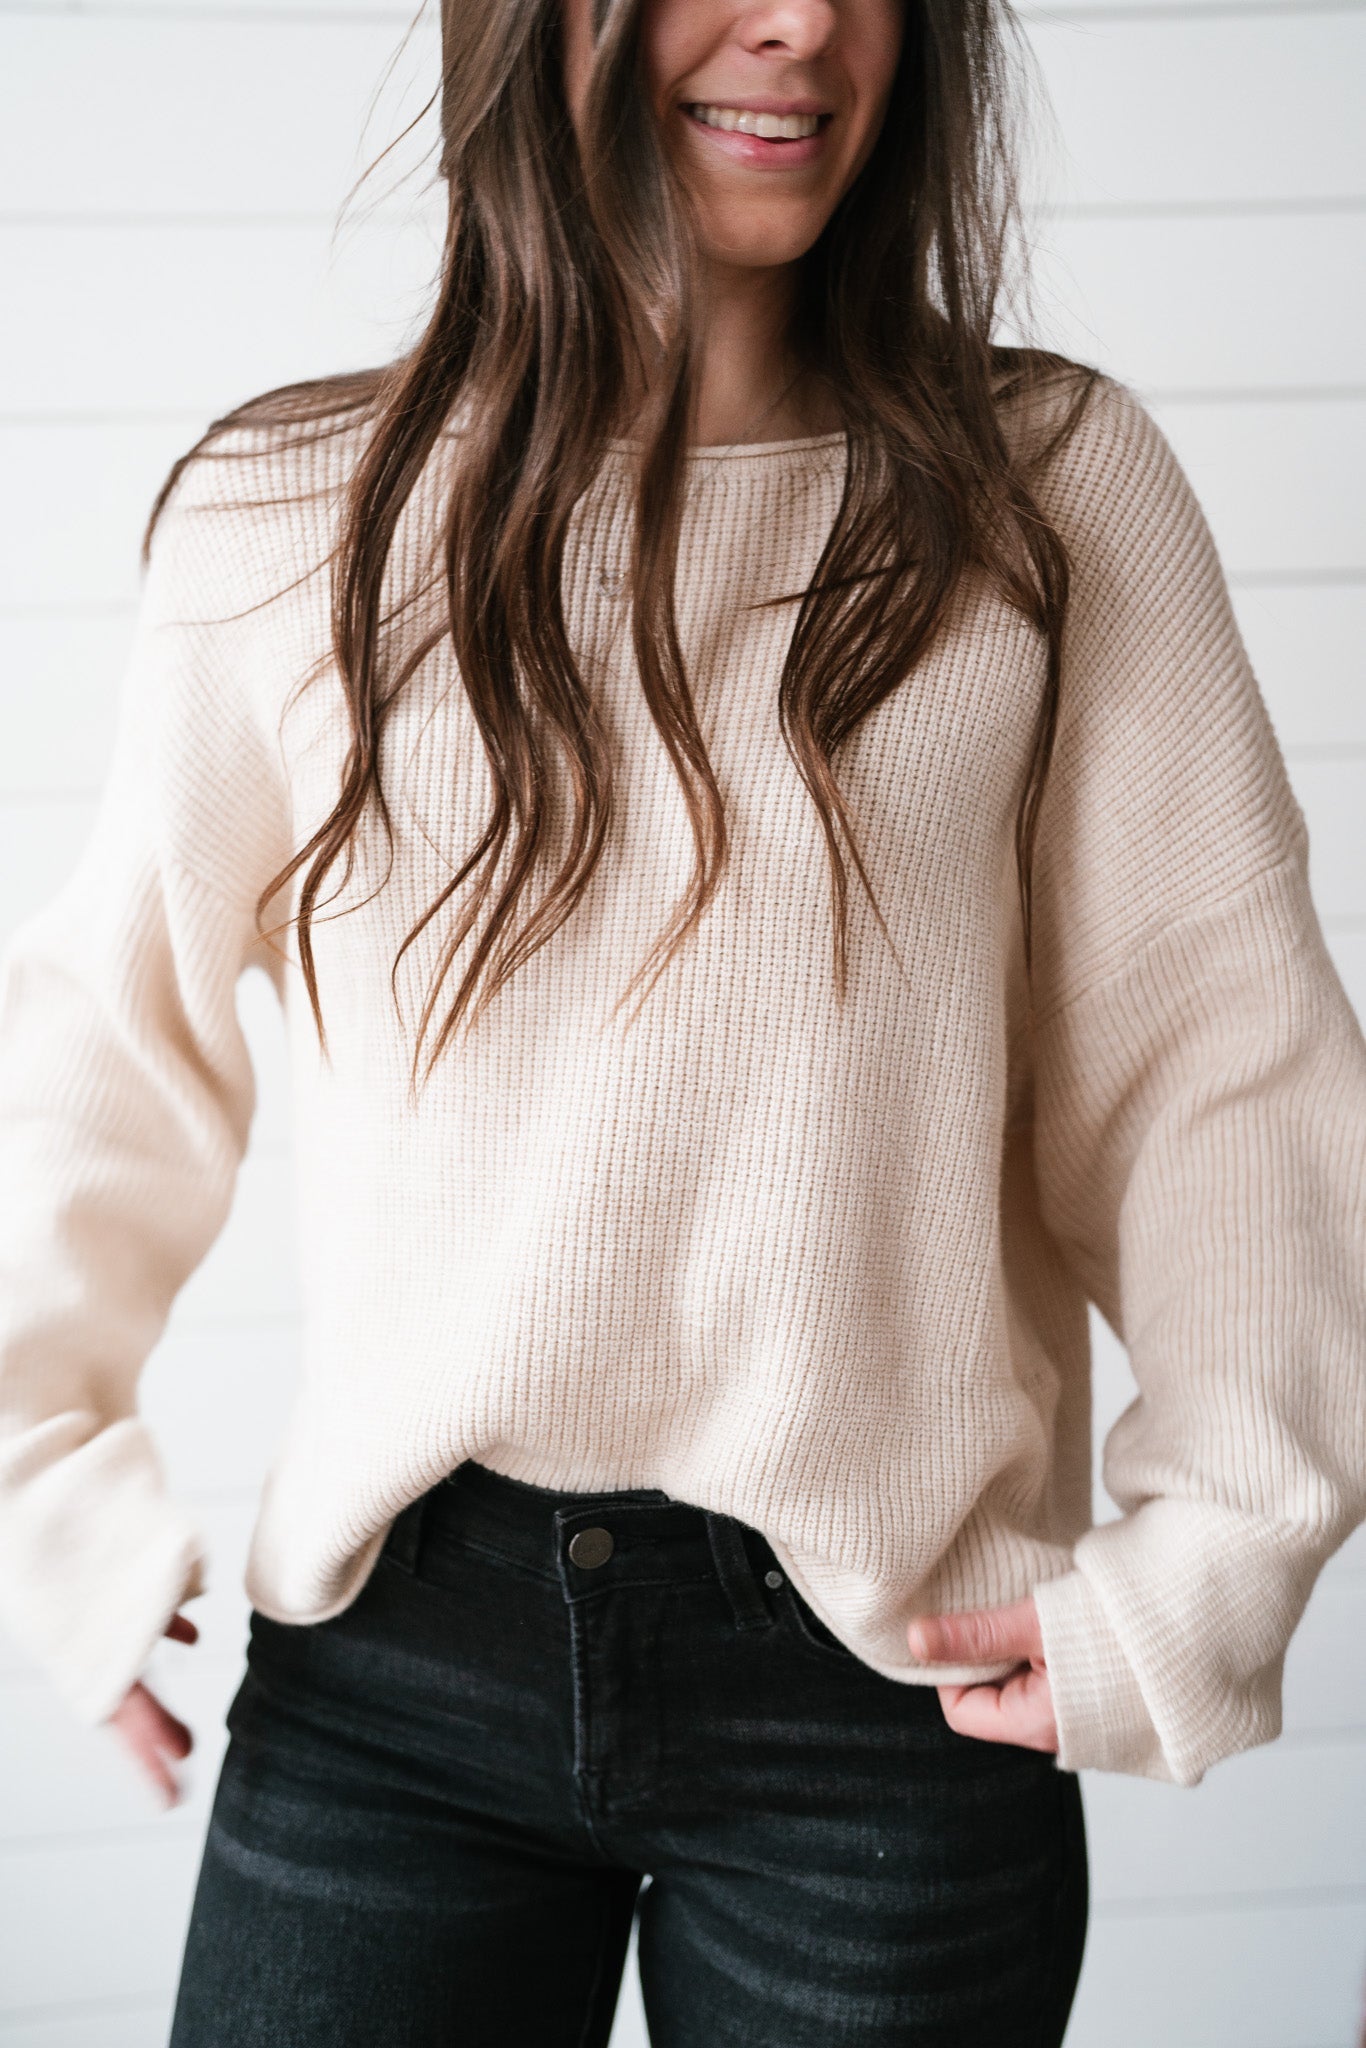 Coffee Date Sweater Top